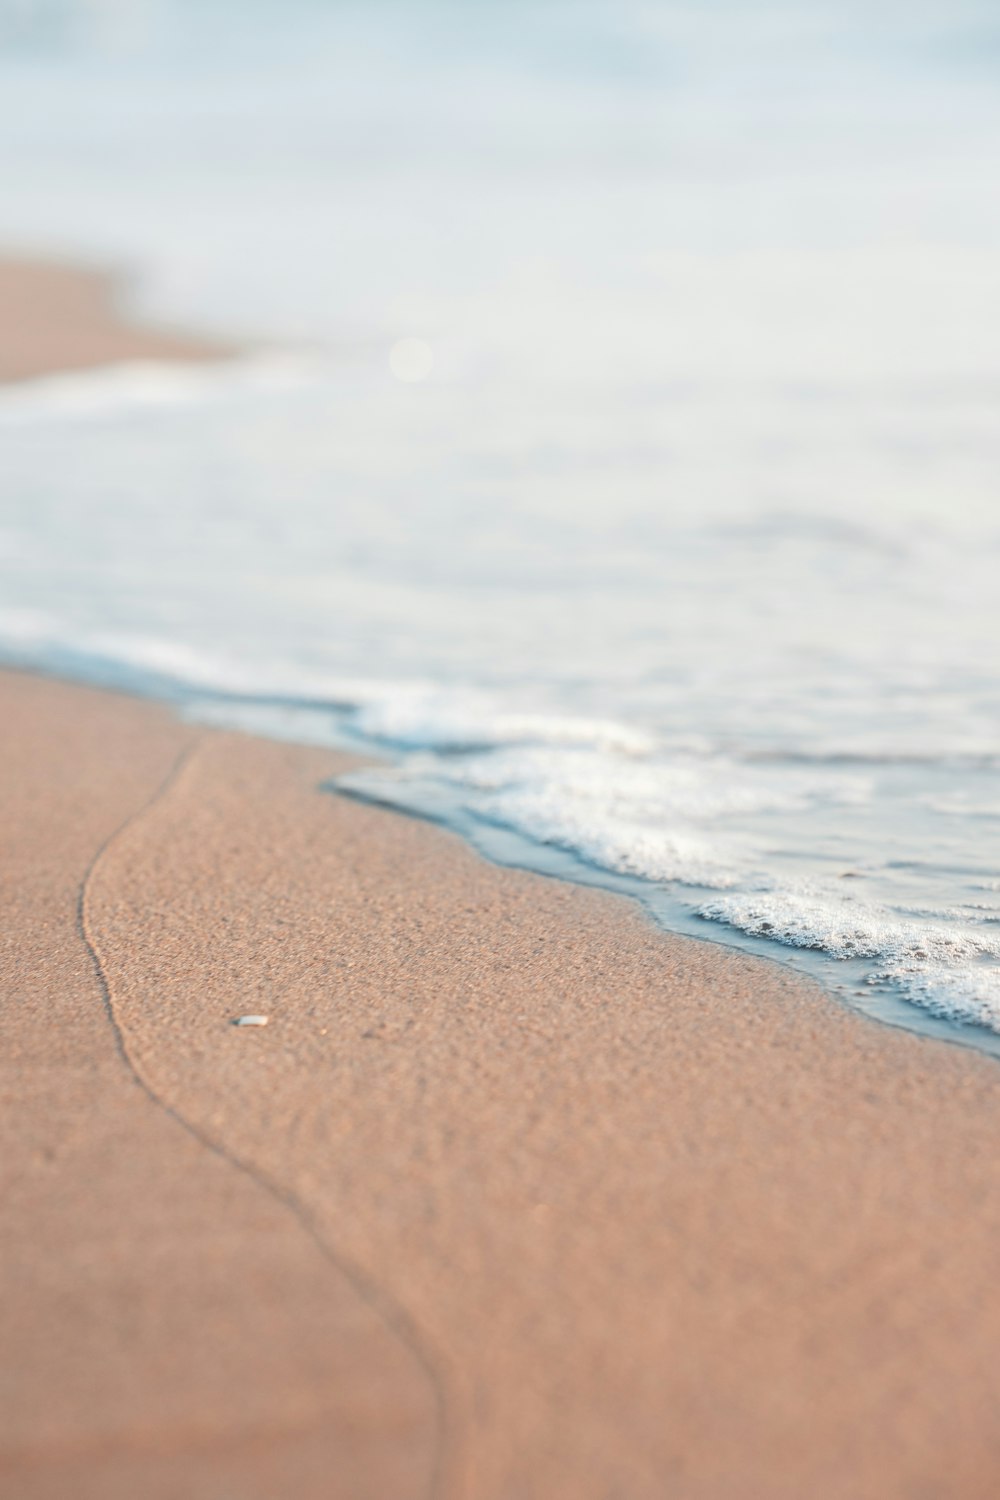 Una foto borrosa de una playa con olas entrando